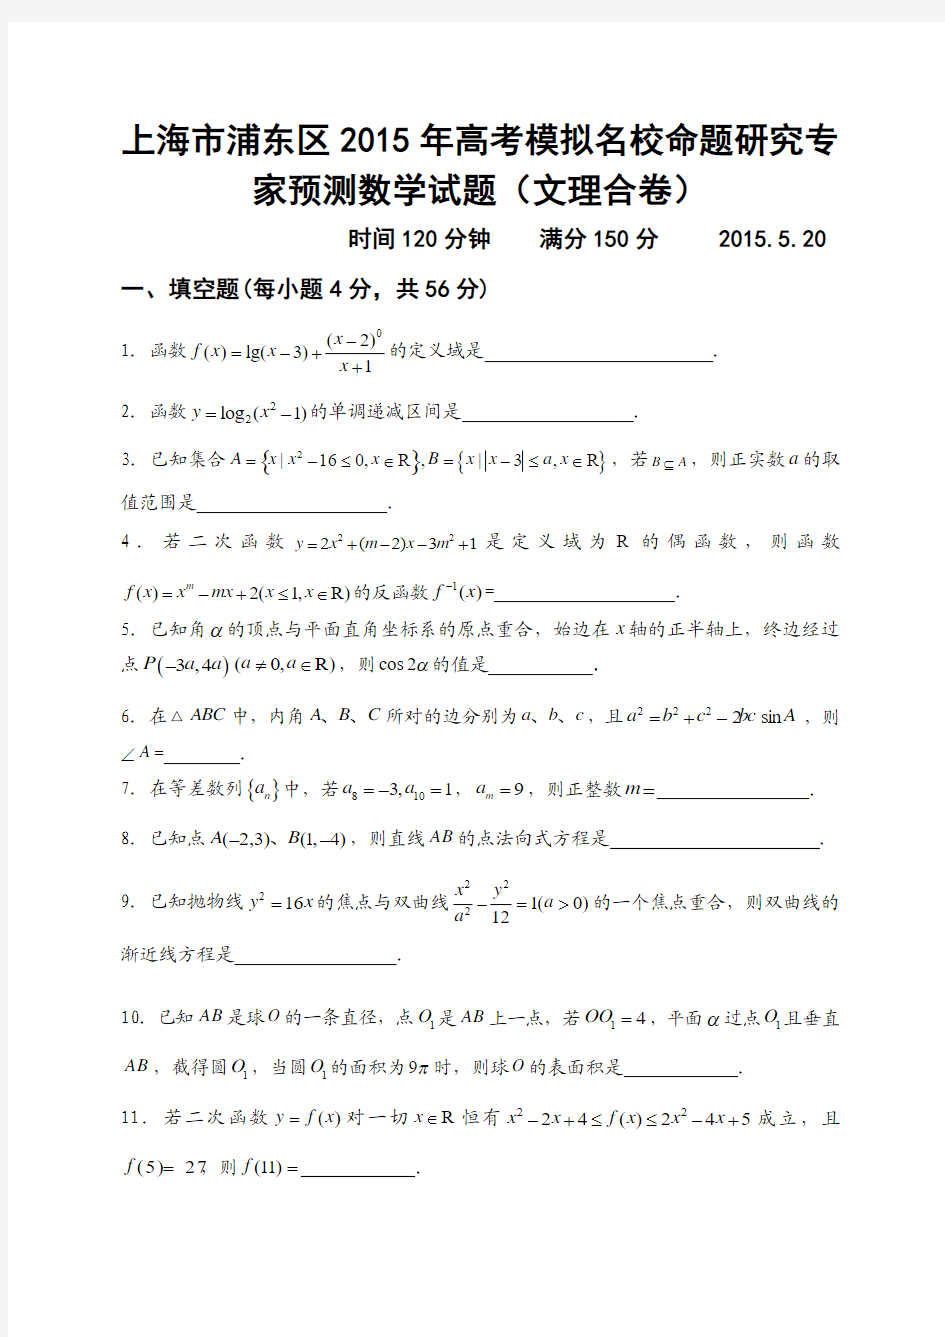 上海市浦东区2015年高考模拟名校命题研究专家预测数学试题(文理合卷)及答案